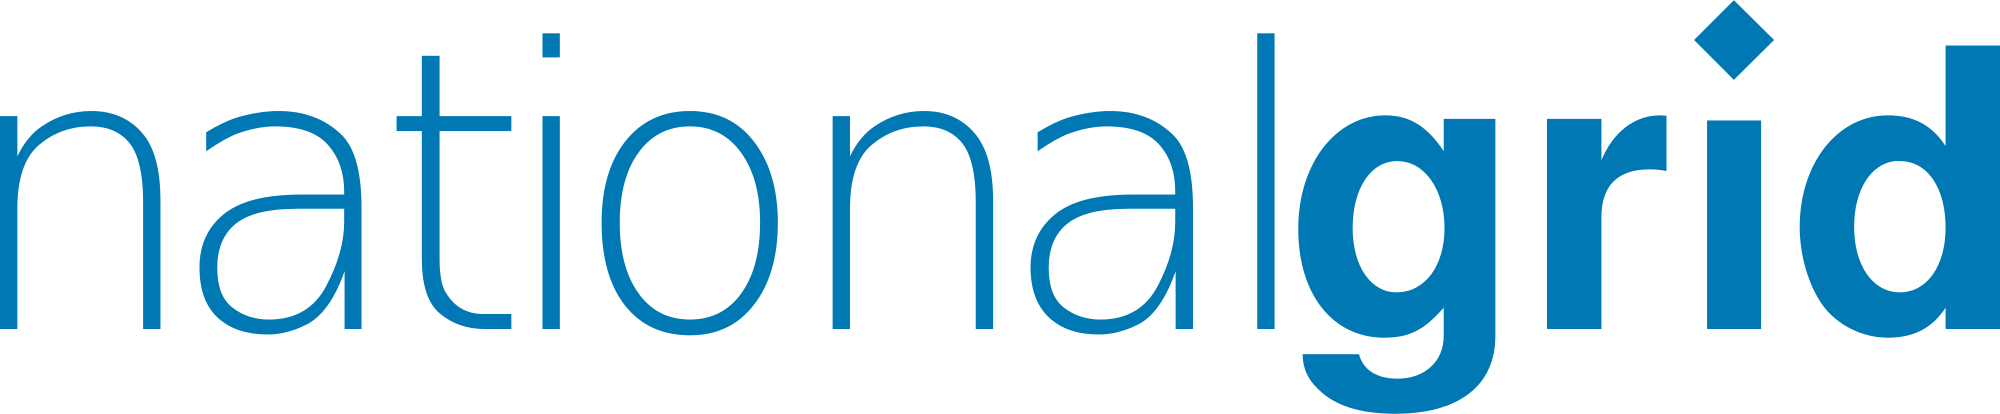 National_Grid_logo.png